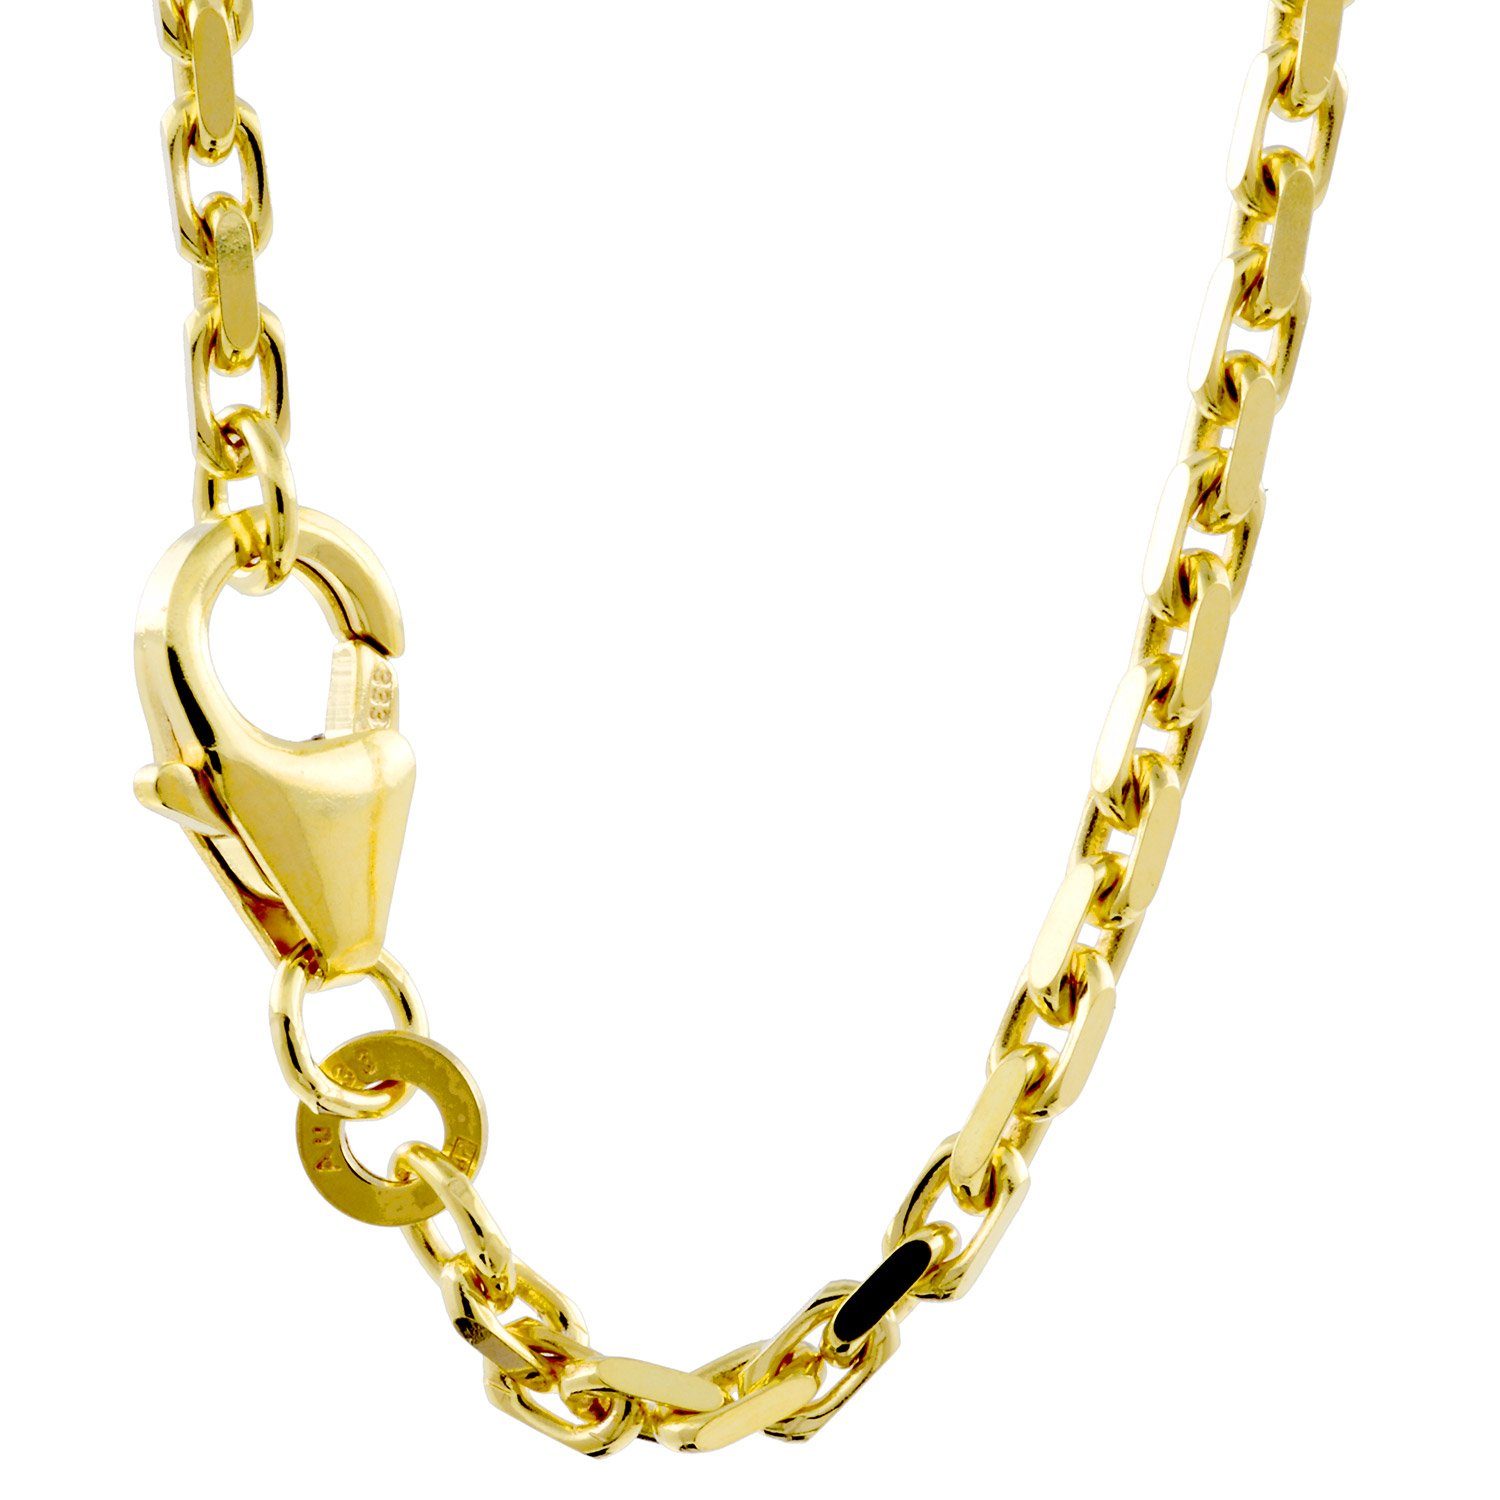 HOPLO Goldkette Ankerkette diamantiert Halskette - Legierung 585 - 14 Karat  Gold - Kettenbreite 2,0 mm - Kettenlänge 50 cm, Made in Germany